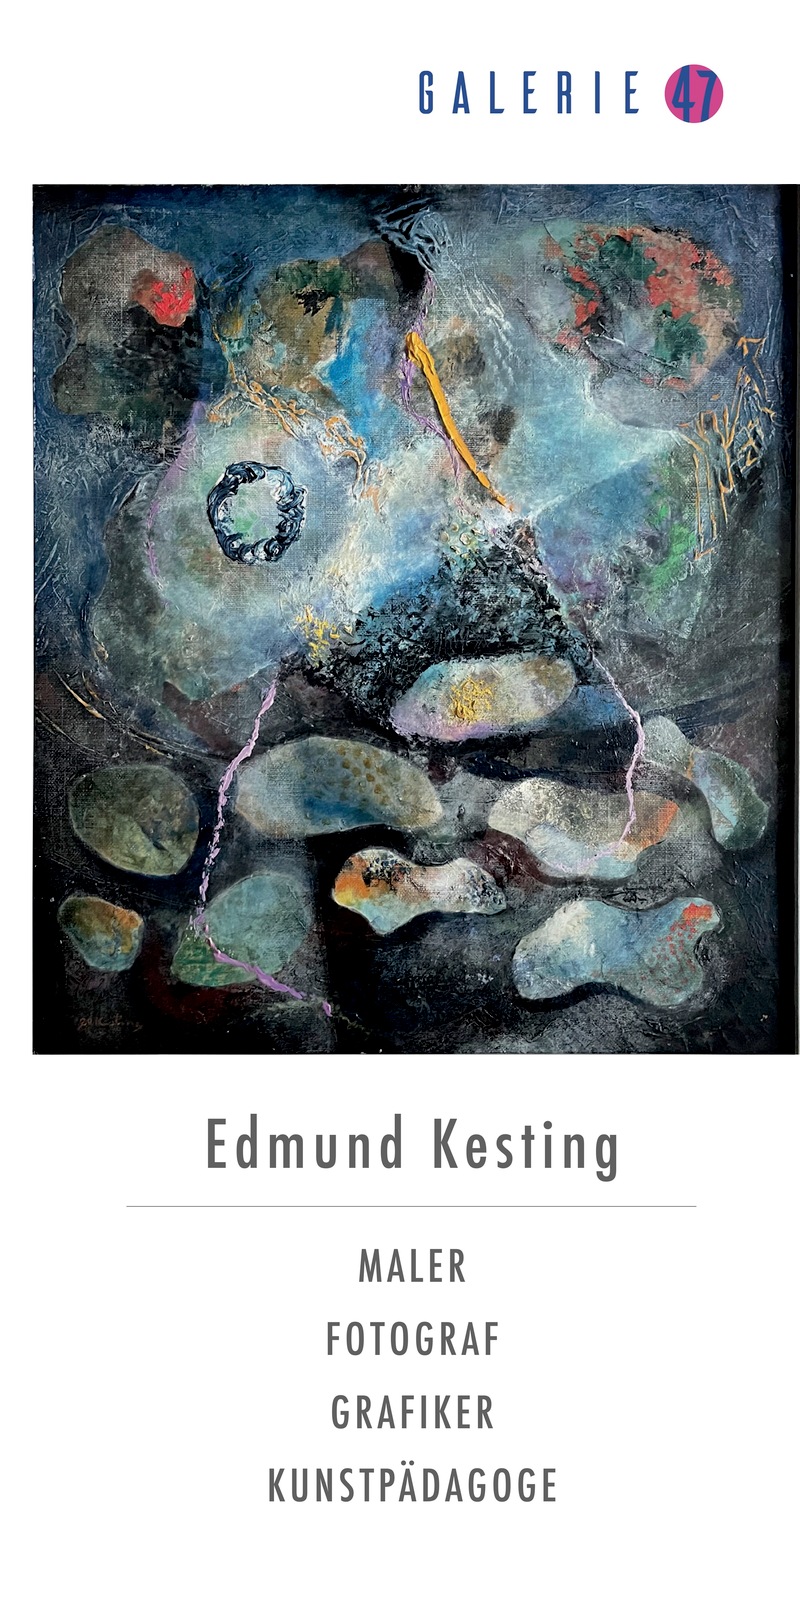 Edmund Kesting: Vielseitige Werke eines Avantgarde-Künstlers, Birkenwerder